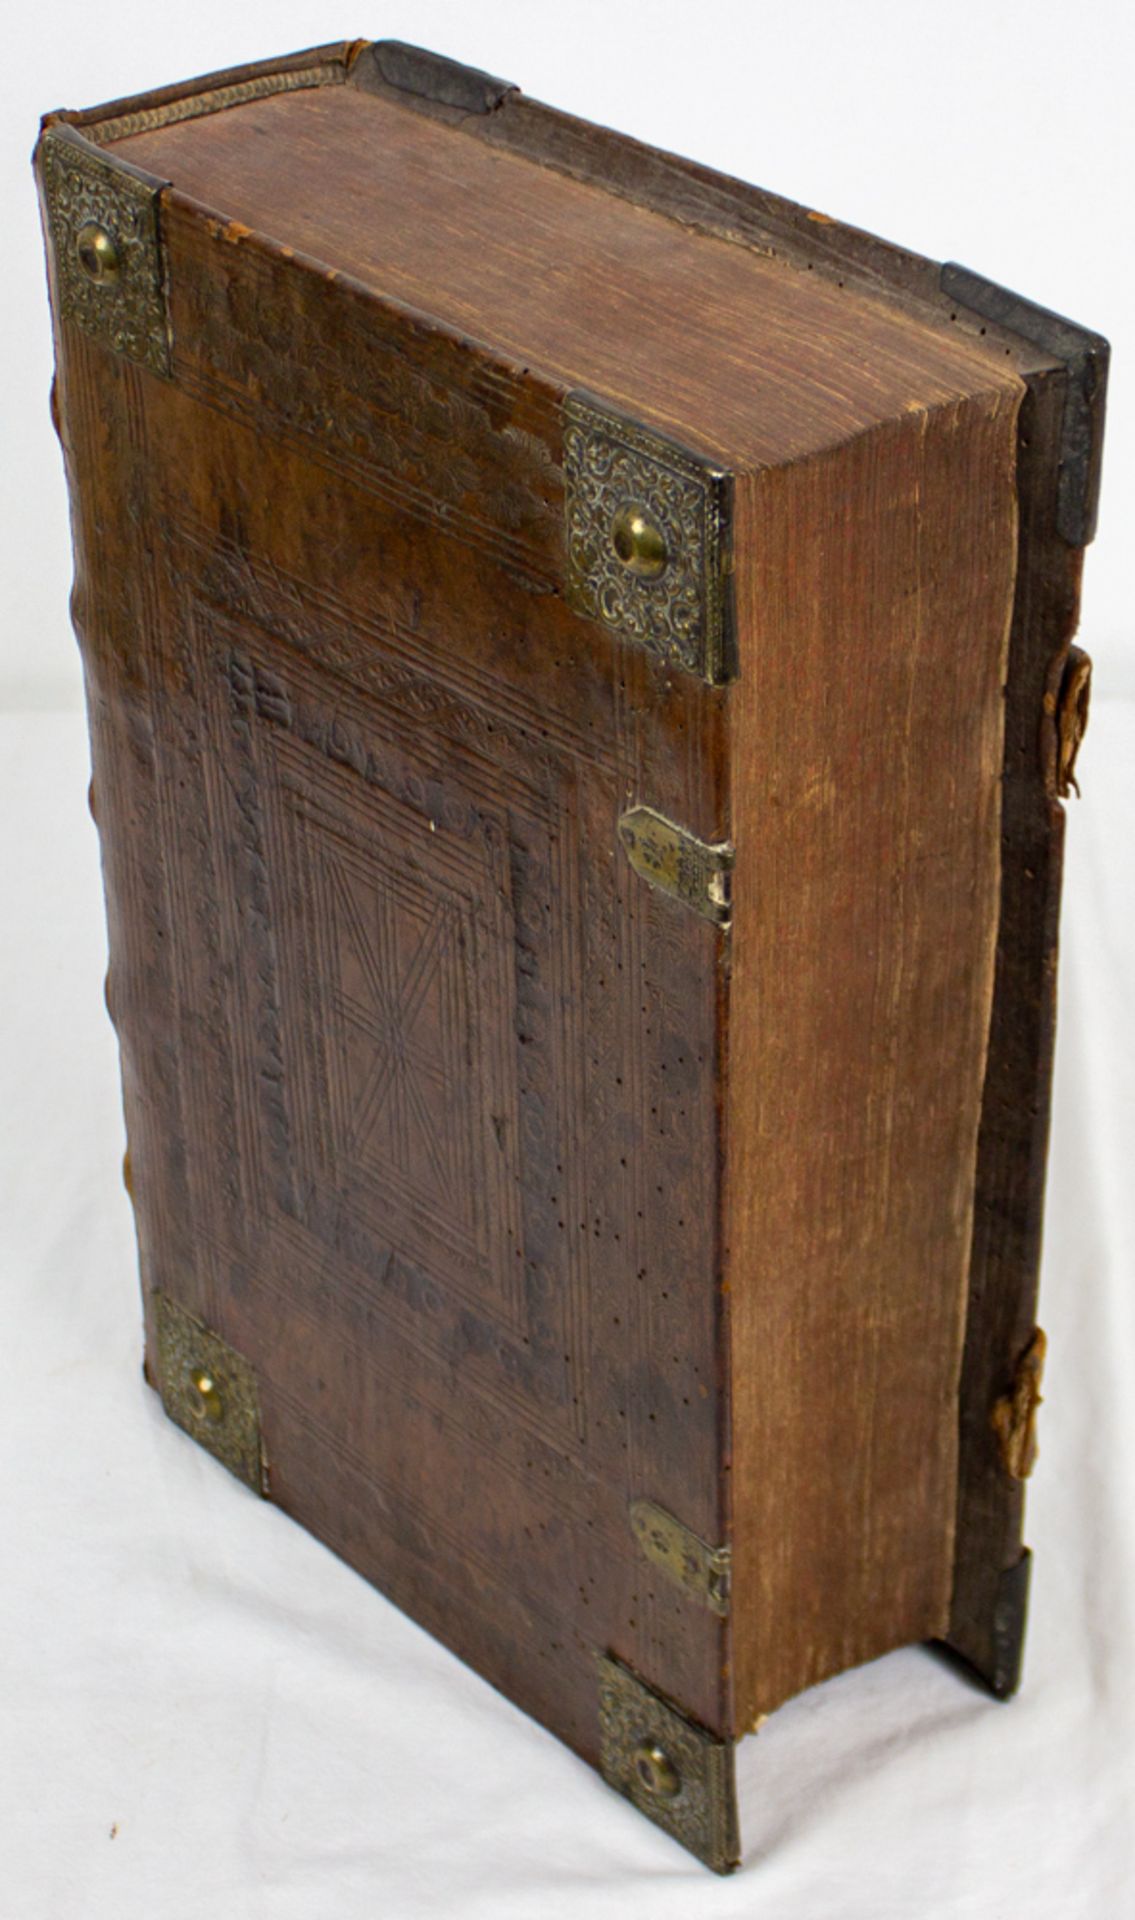 Dilherr-Bibel, mit zahlreichen Kuperstichen, Nürnberg 1710.